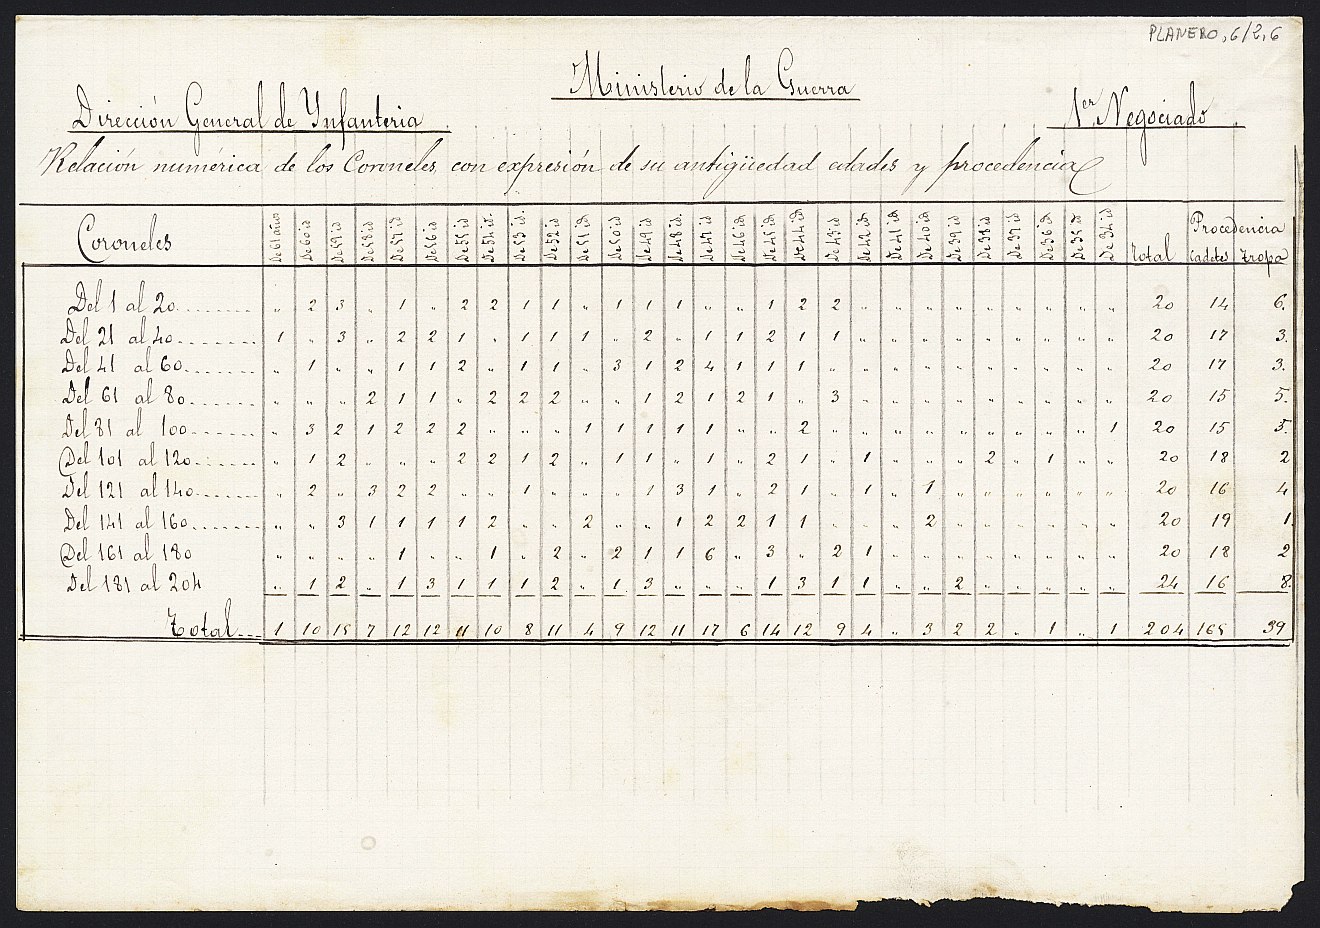 Relación numérica de los coroneles con expresión de su antigüedad, edades y procedencias, realizada por el 1º Negociado de la Dirección General de Infantería, Ministerio de la Guerra.